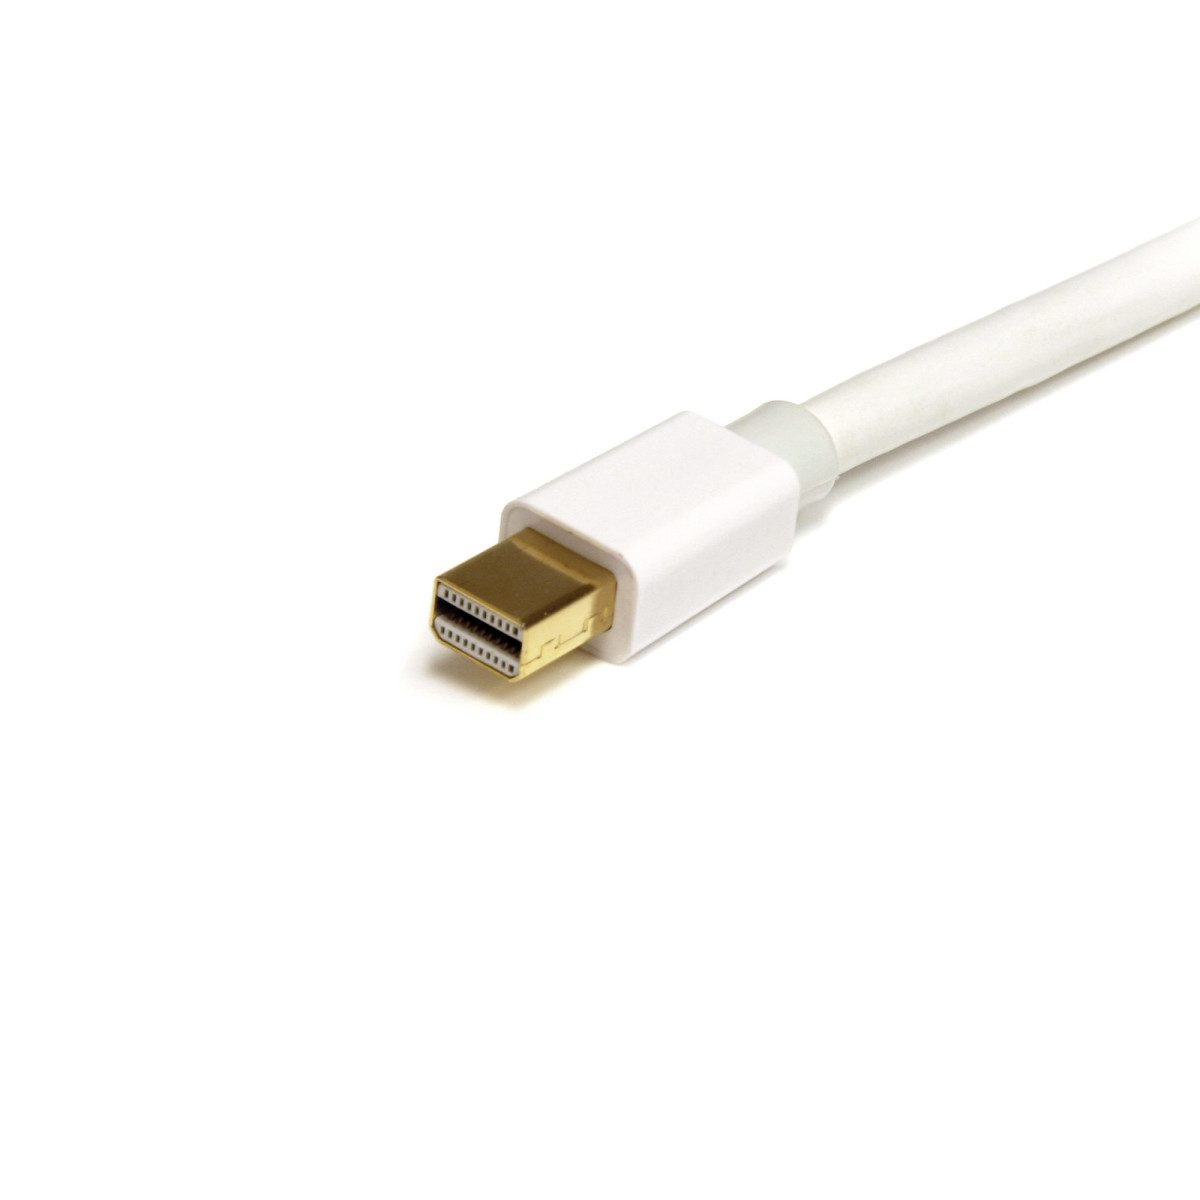 1 m White Mini DisplayPort Cable - M/M